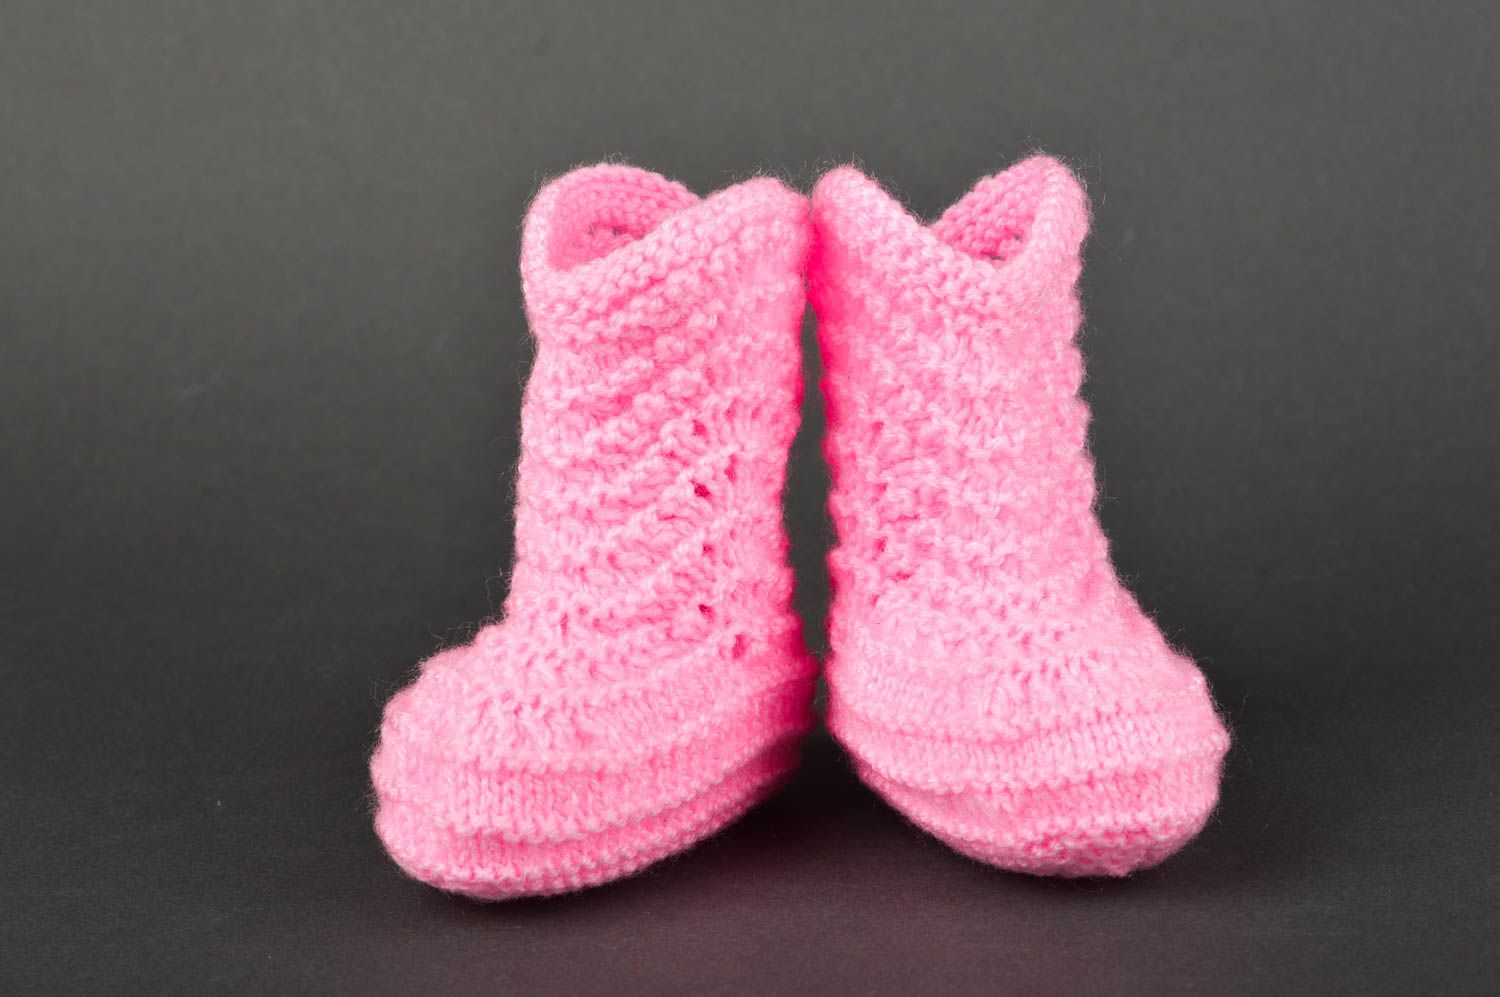 Chaussons bottes faits main Chaussures bébé roses tricotés Vêtement bébé fille photo 2